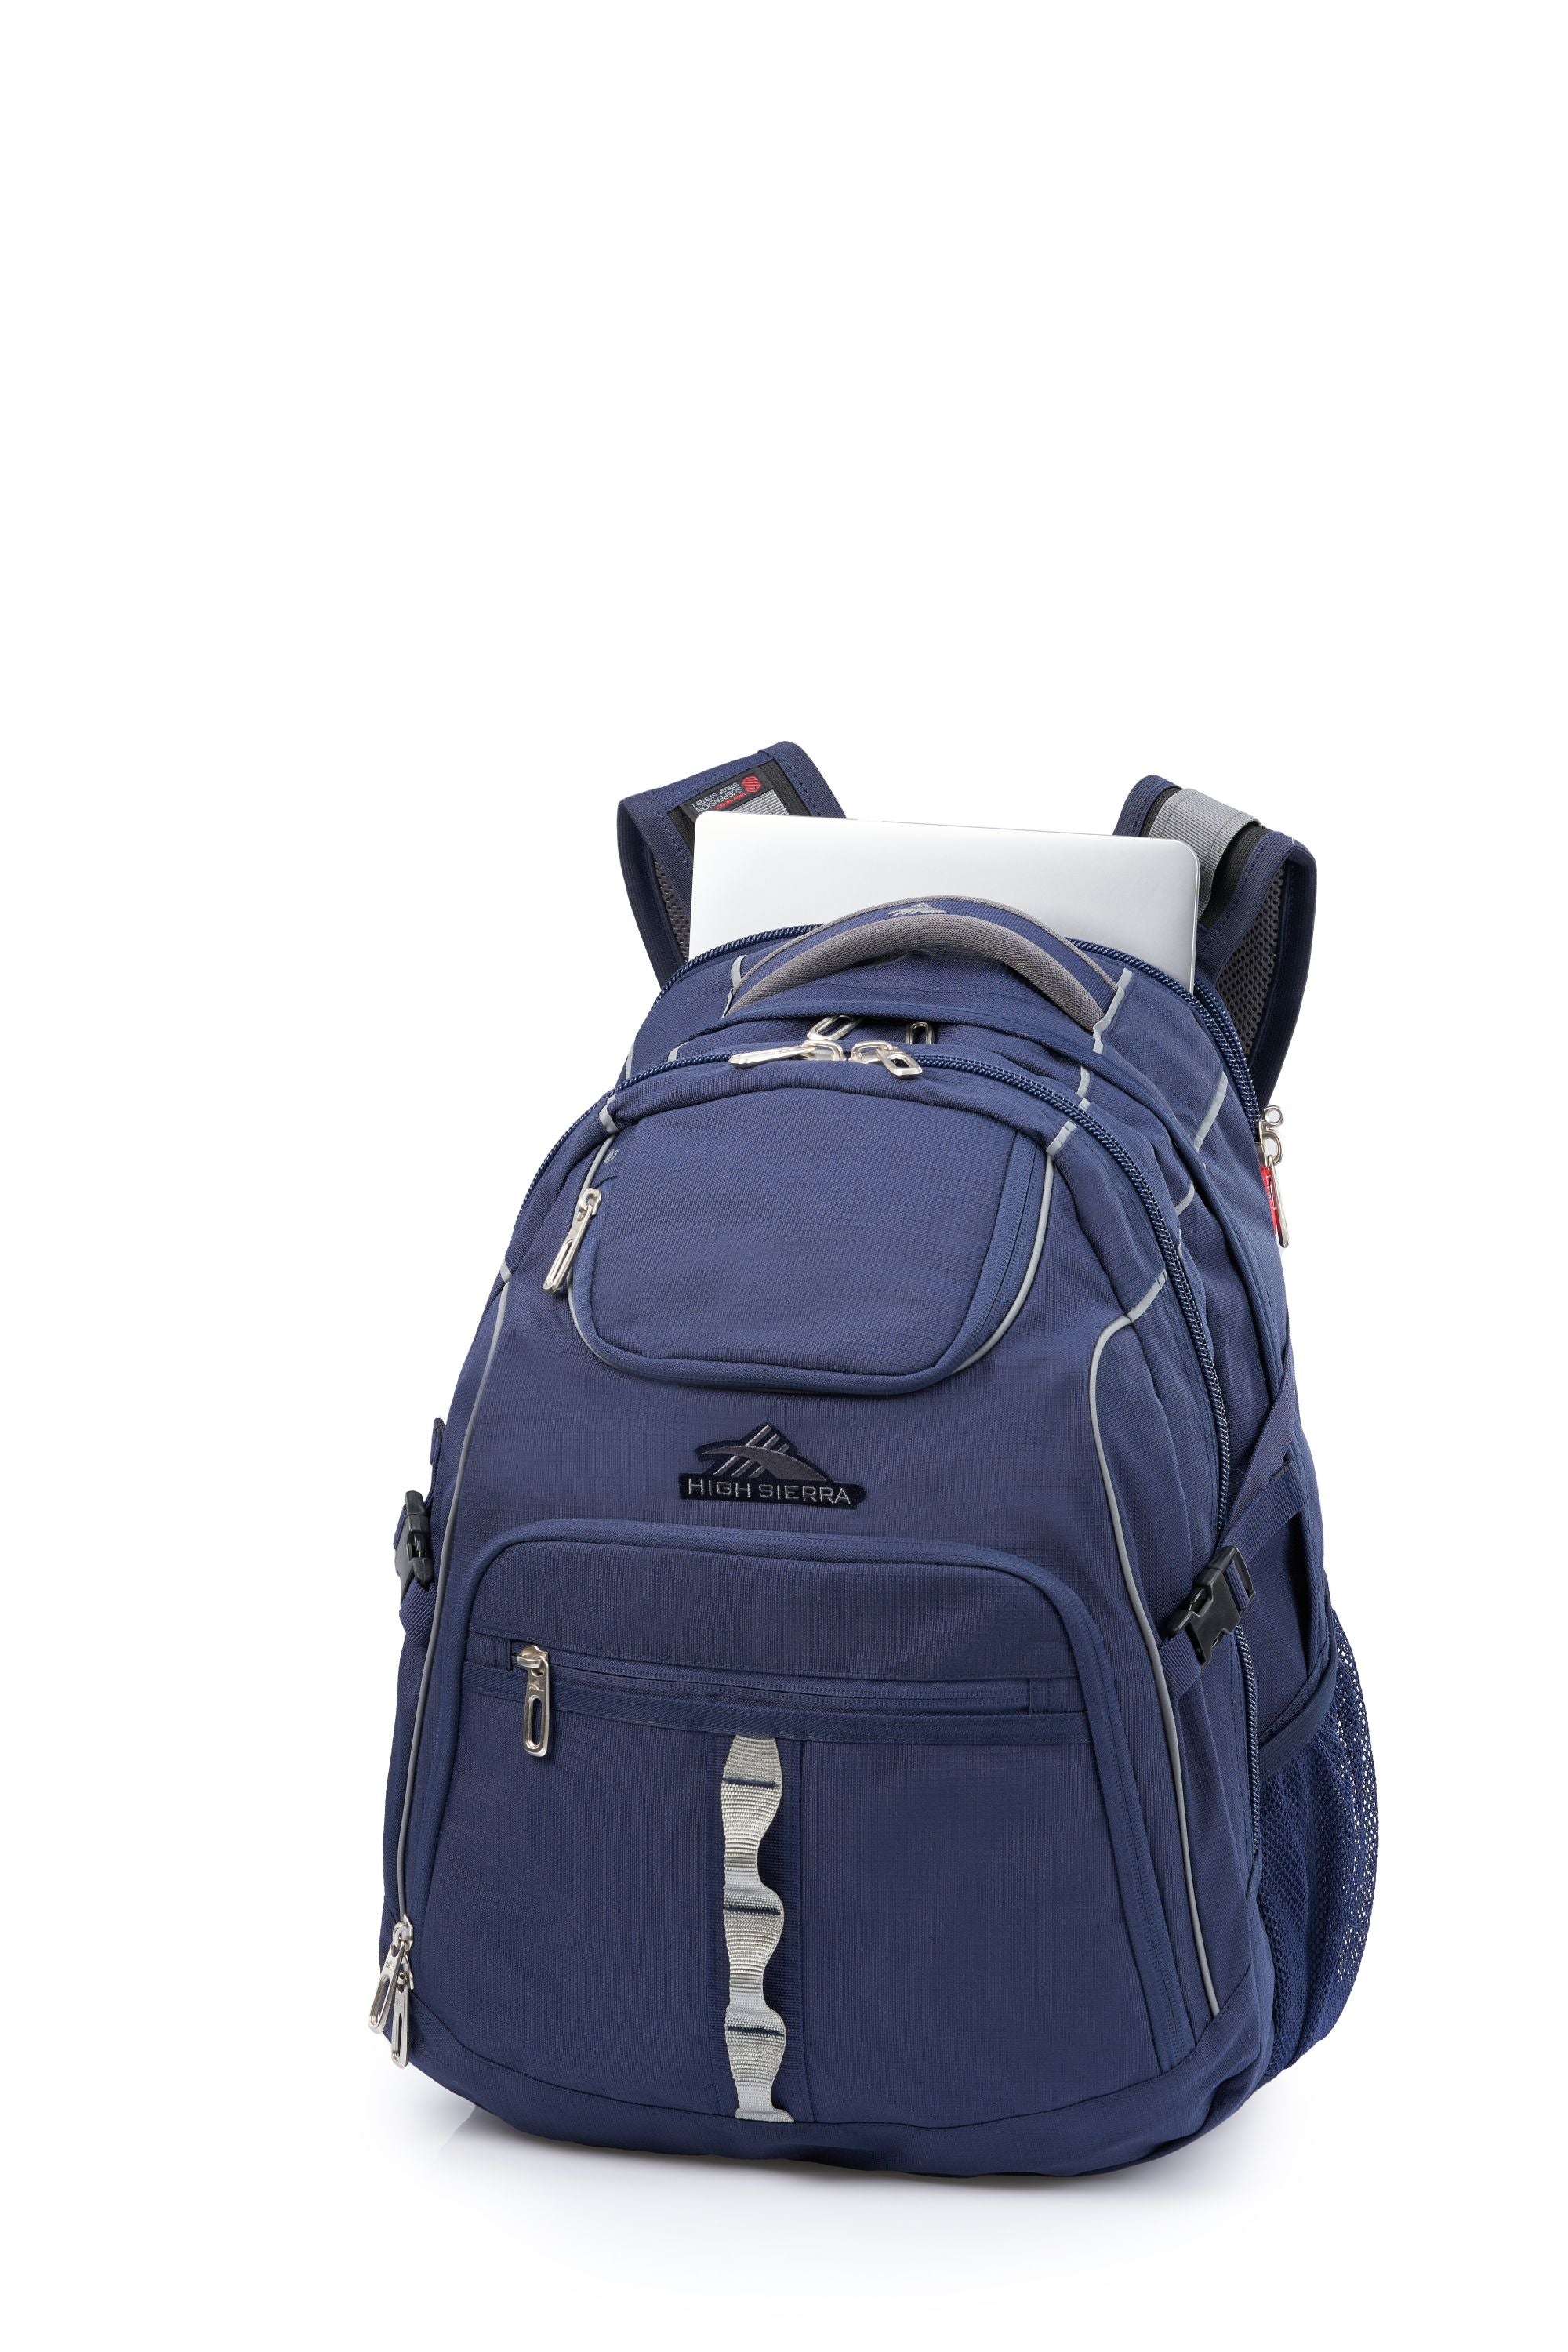 High Sierra - Access 3.0 Eco Backpack - Marine Blue-5